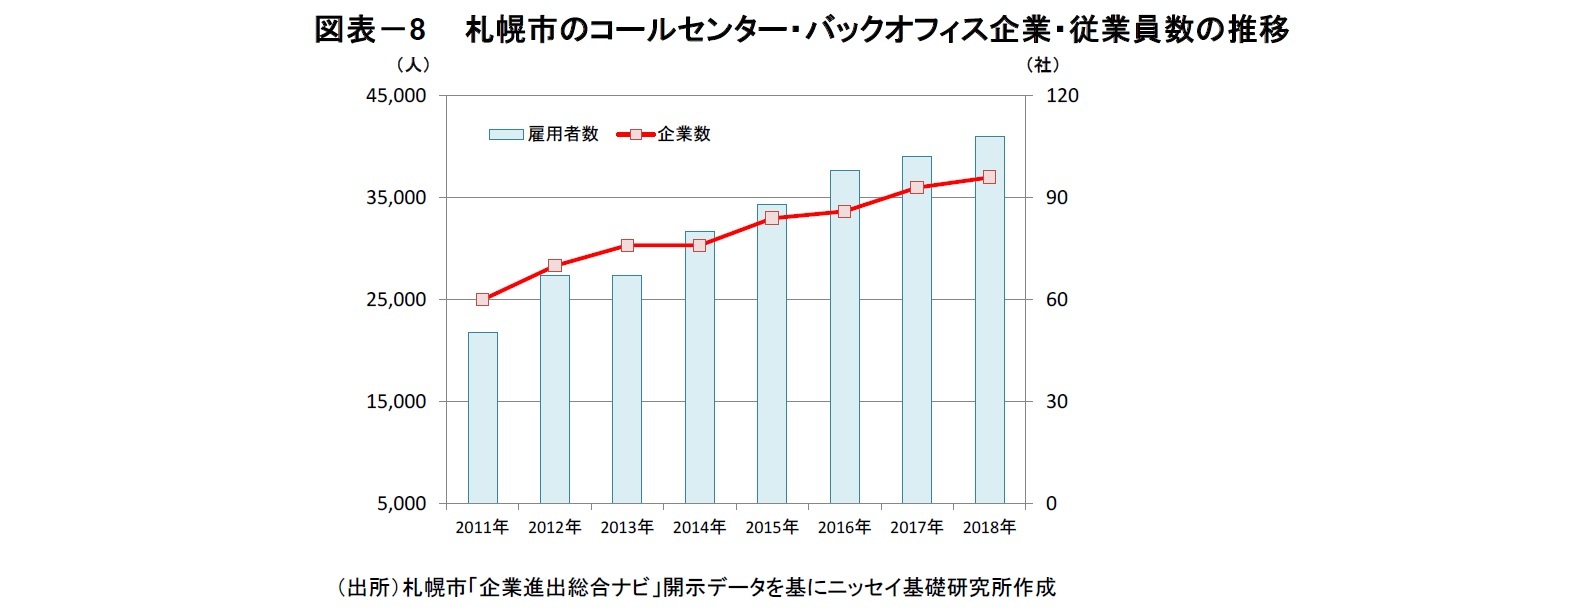 図表－8　 札幌市のコールセンター・バックオフィス企業・従業員数の推移